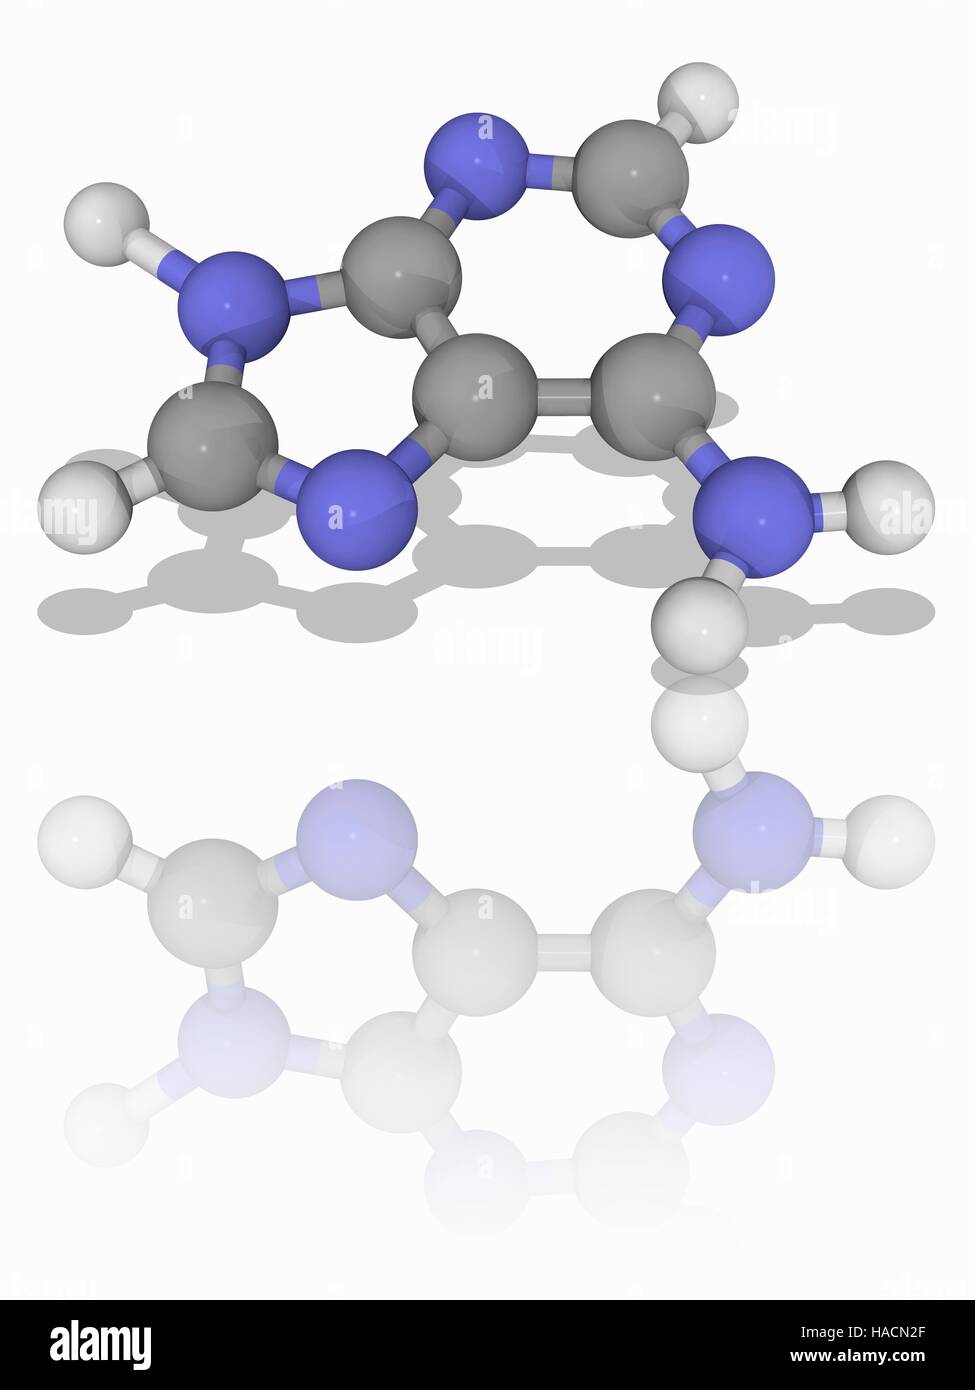 Adenin, Molekülmodell von Purin Nucleobase Adenin (C5. H5. N5). Dieses Molekül hat mehrere Rollen in Biochemie einschließlich bilden ein Nukleotid der DNA, die Grundlage des genetischen Codes. Atome als Kugeln dargestellt werden und sind farblich gekennzeichnet: Kohlenstoff (grau), Wasserstoff (weiß) und Stickstoff (blau). Abbildung. Stockfoto